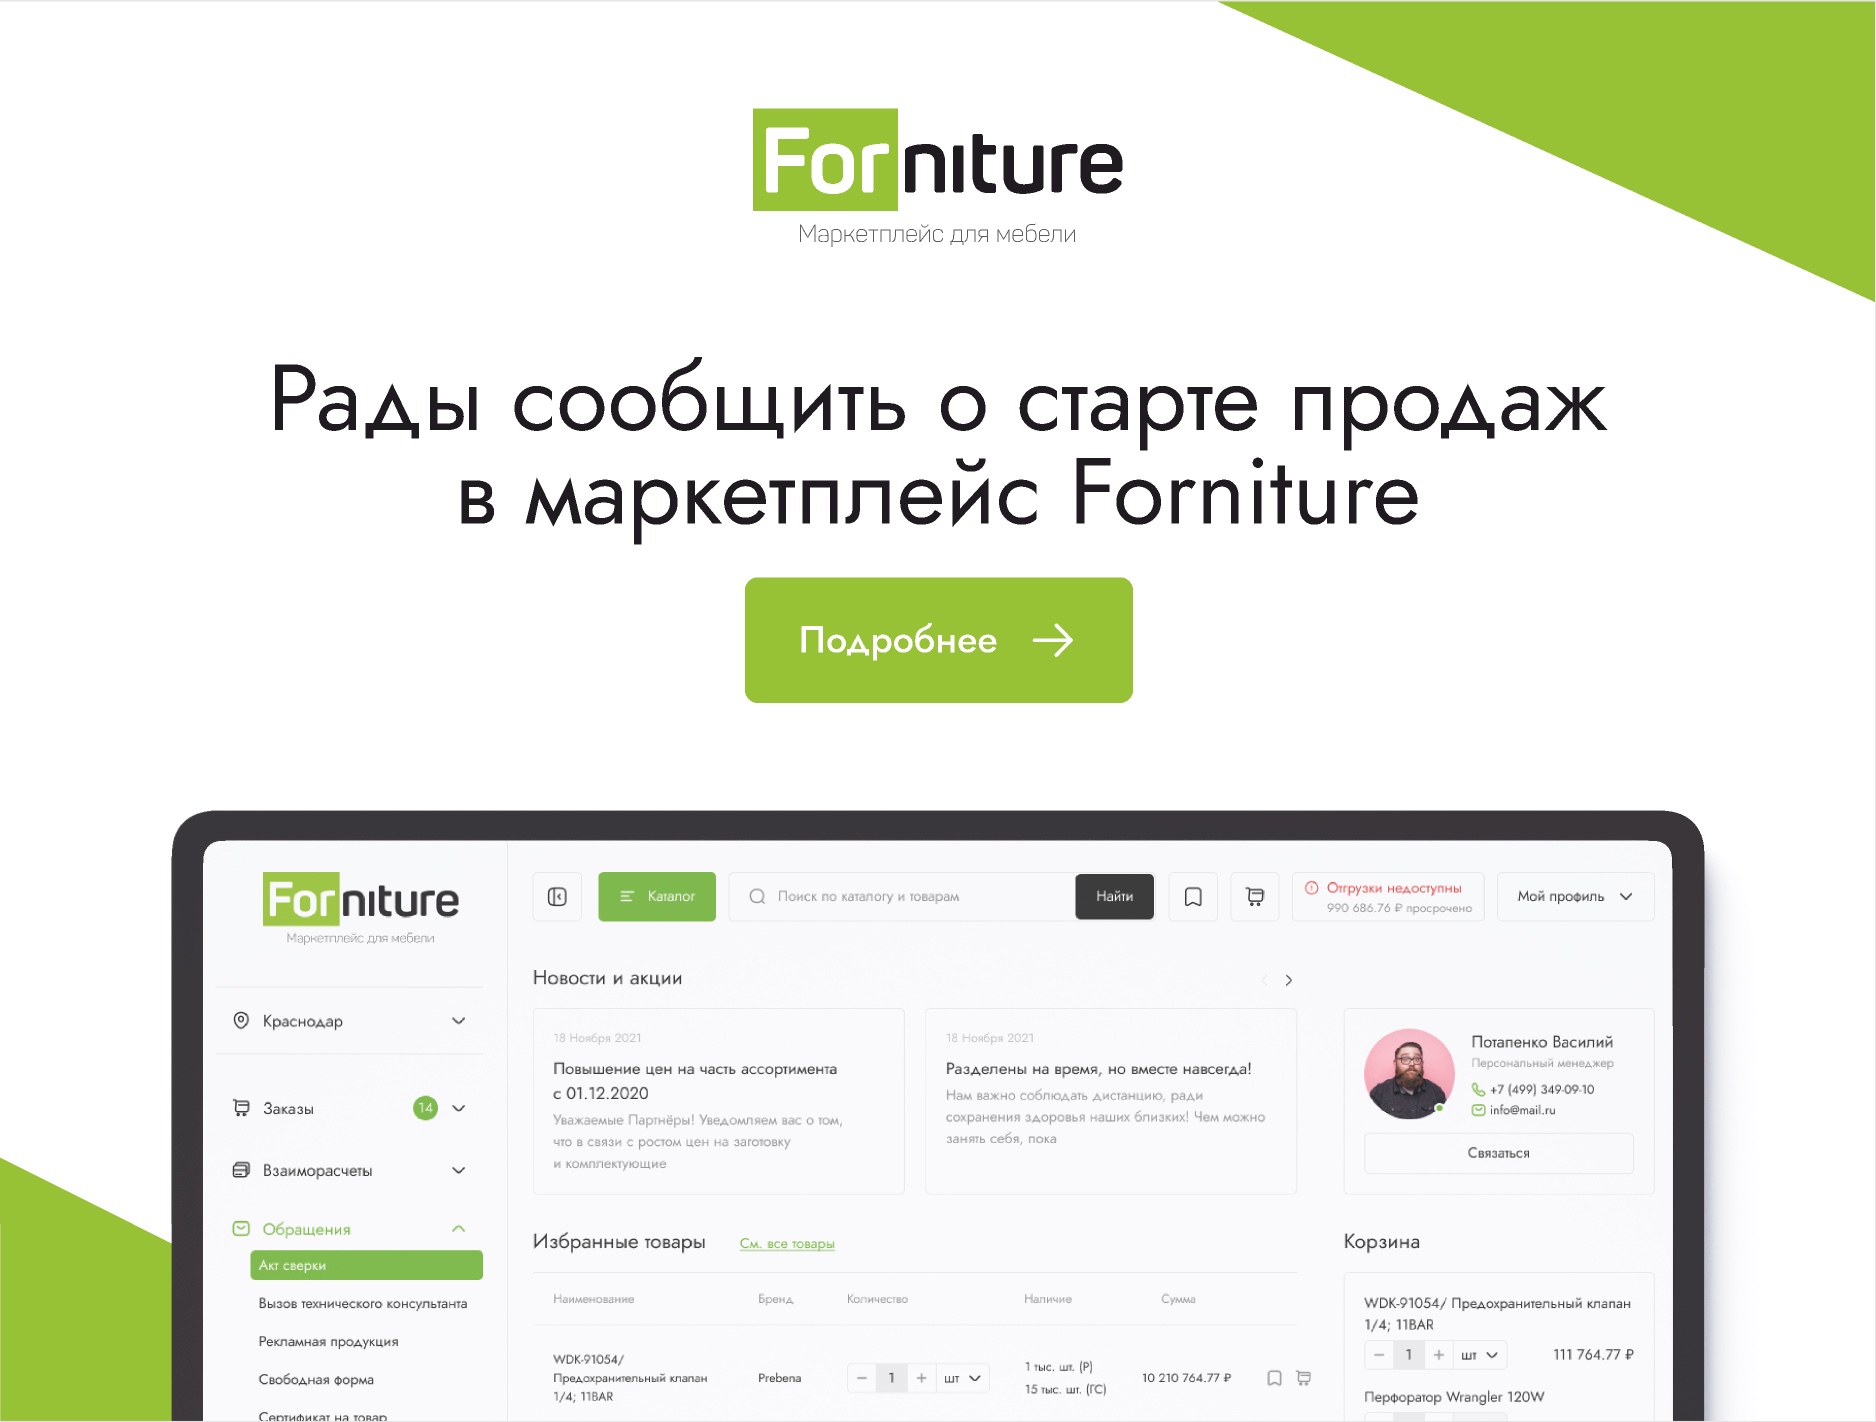 Разработка личного кабинета покупателя для маркетплейса forniture.ru